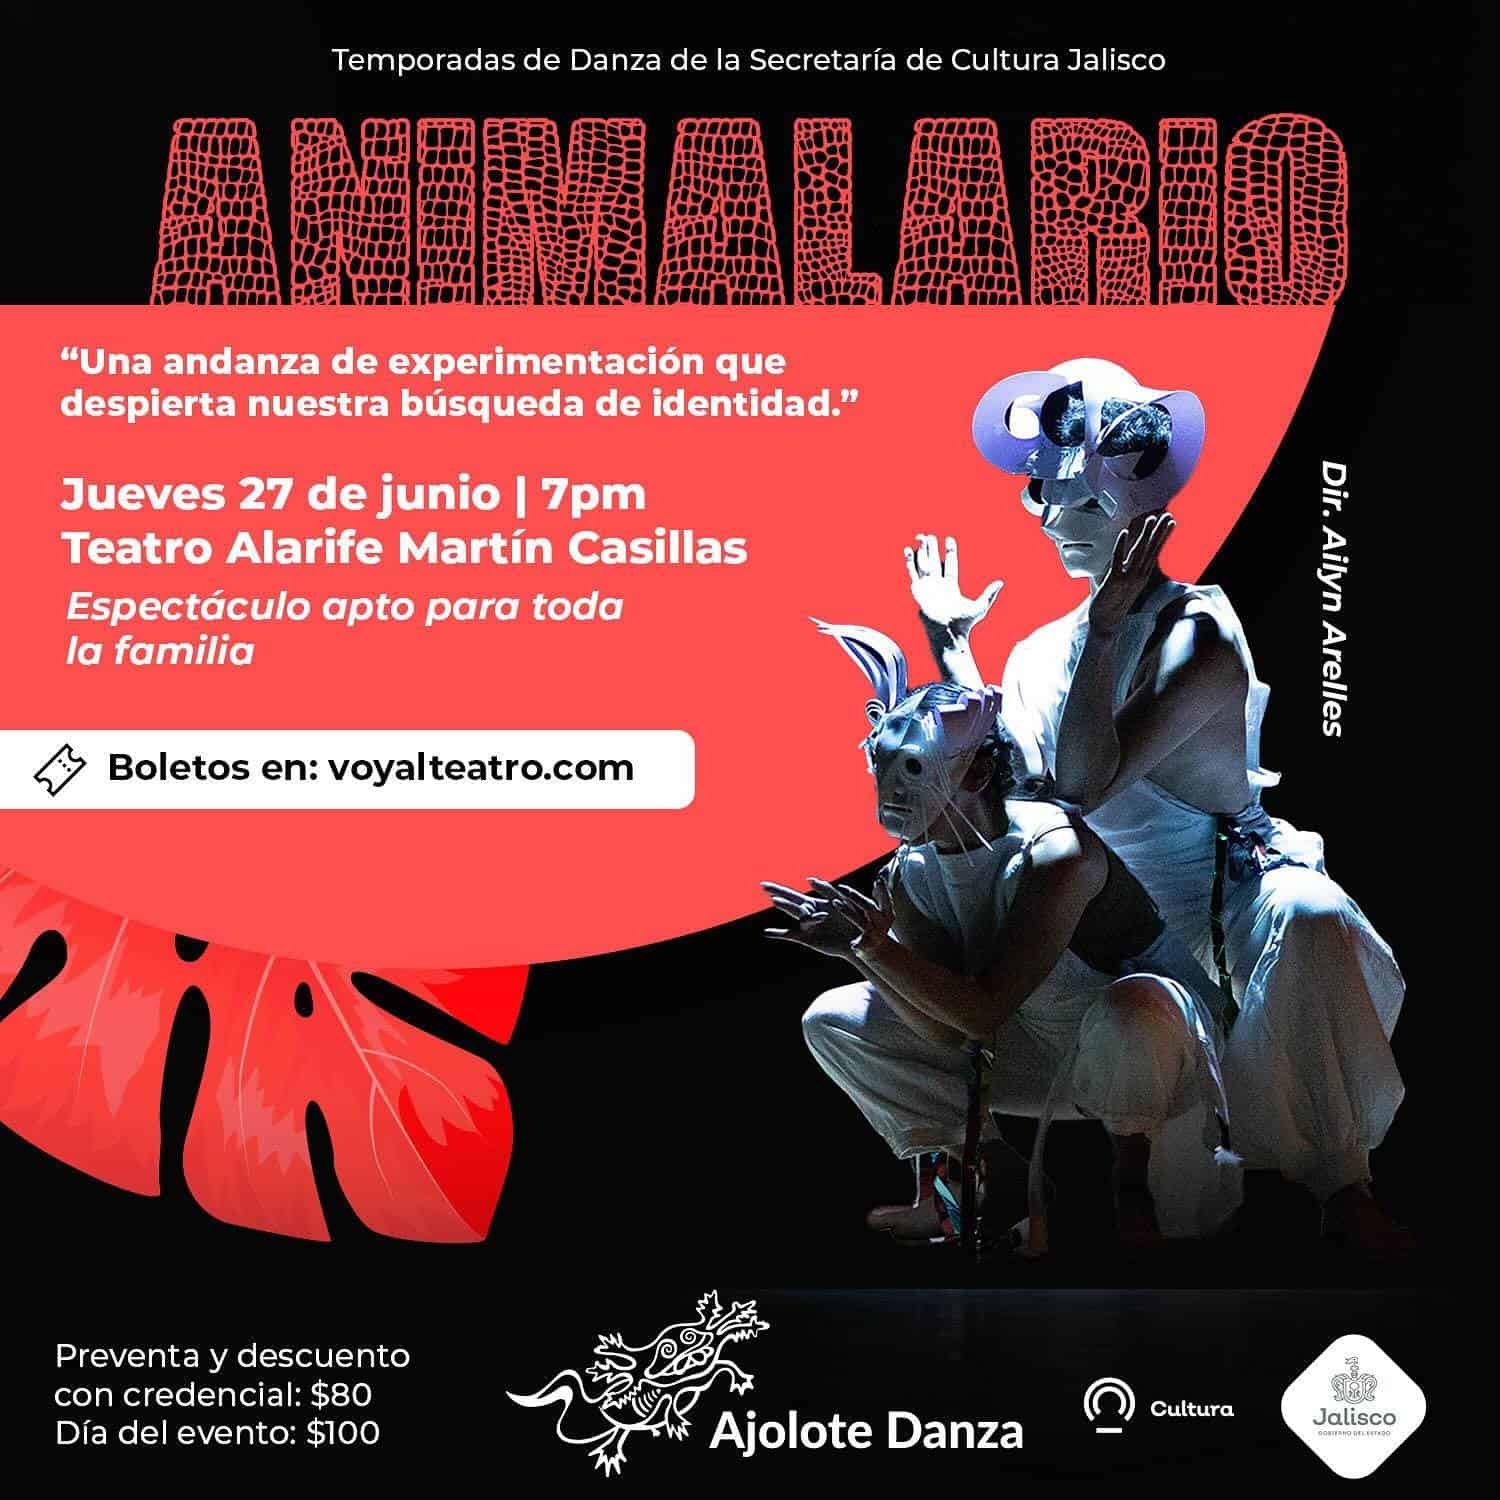 Danza experimental: La obra “Animalario” será presentada en el Teatro Alarife Martín Casillas